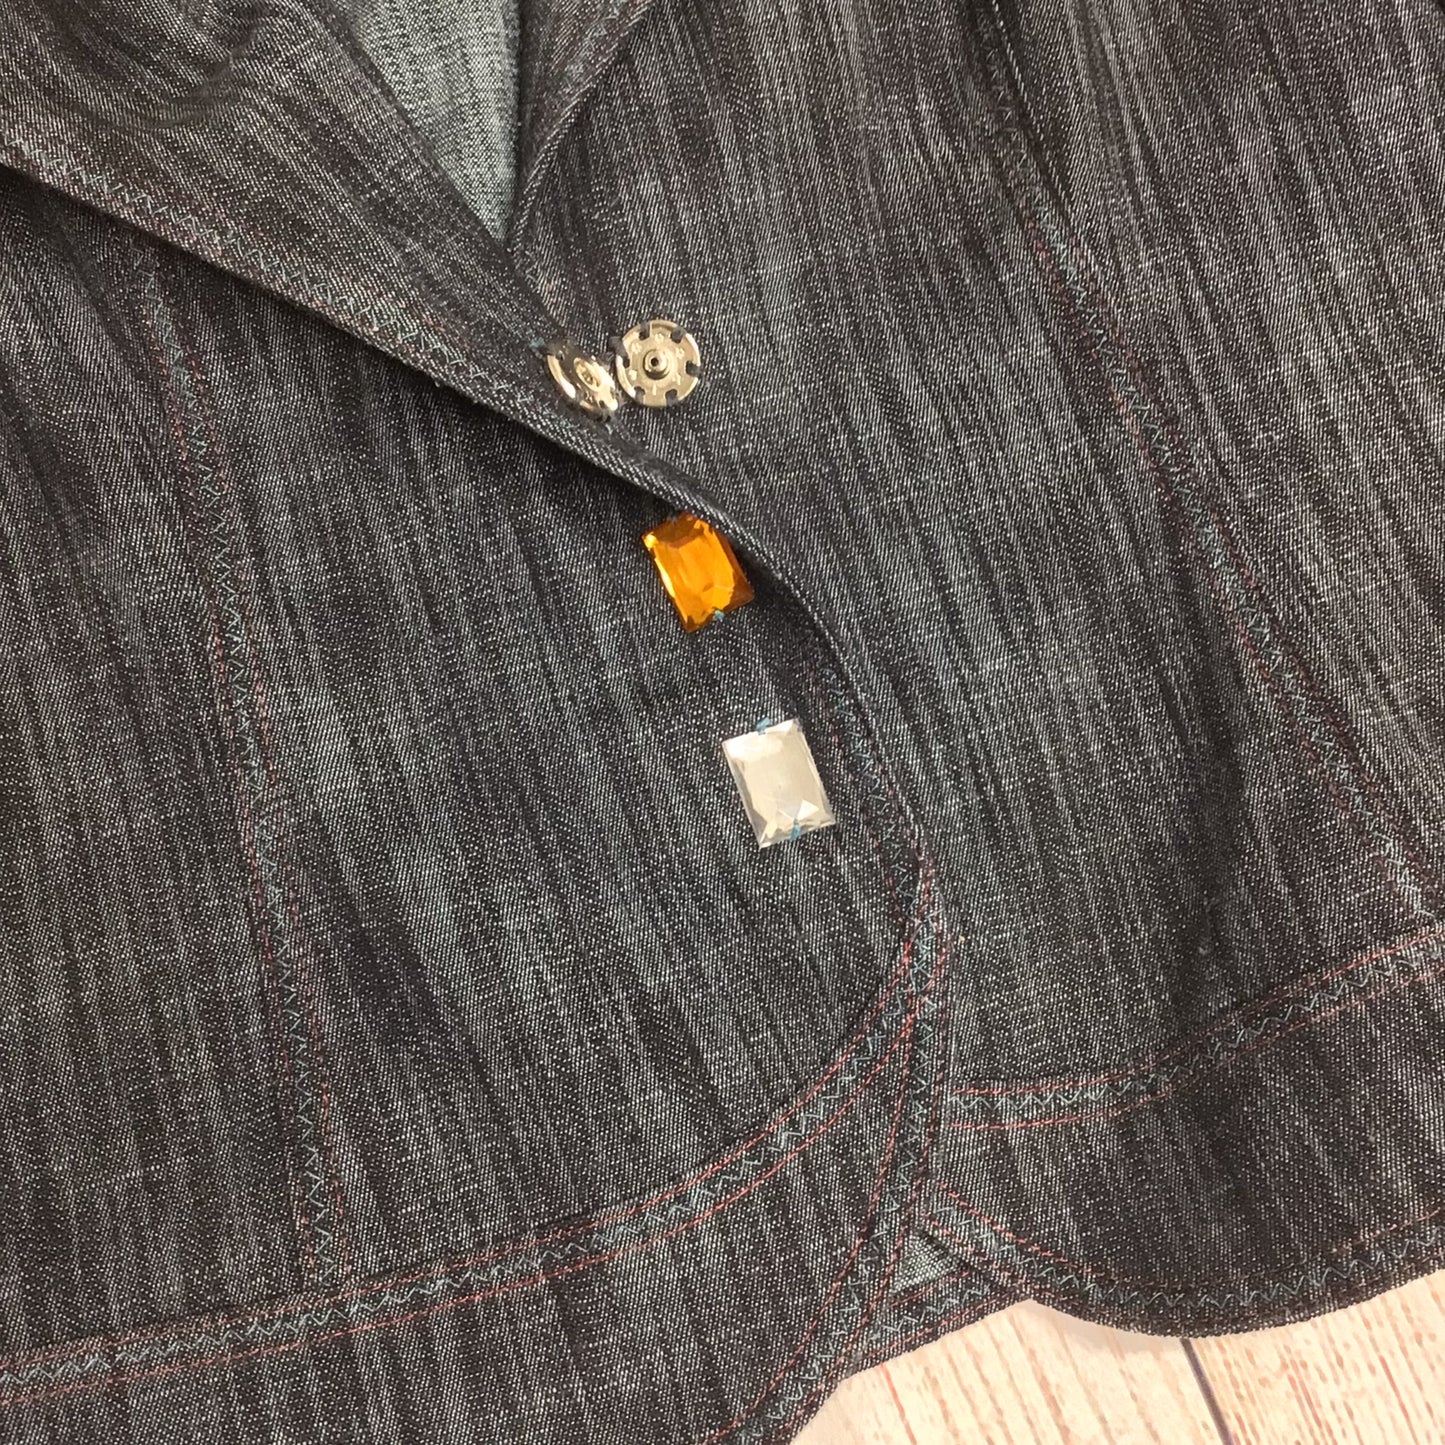 Aria Dark Grey Blazer Jacket w/Jewelled Popper Buttons Size 12